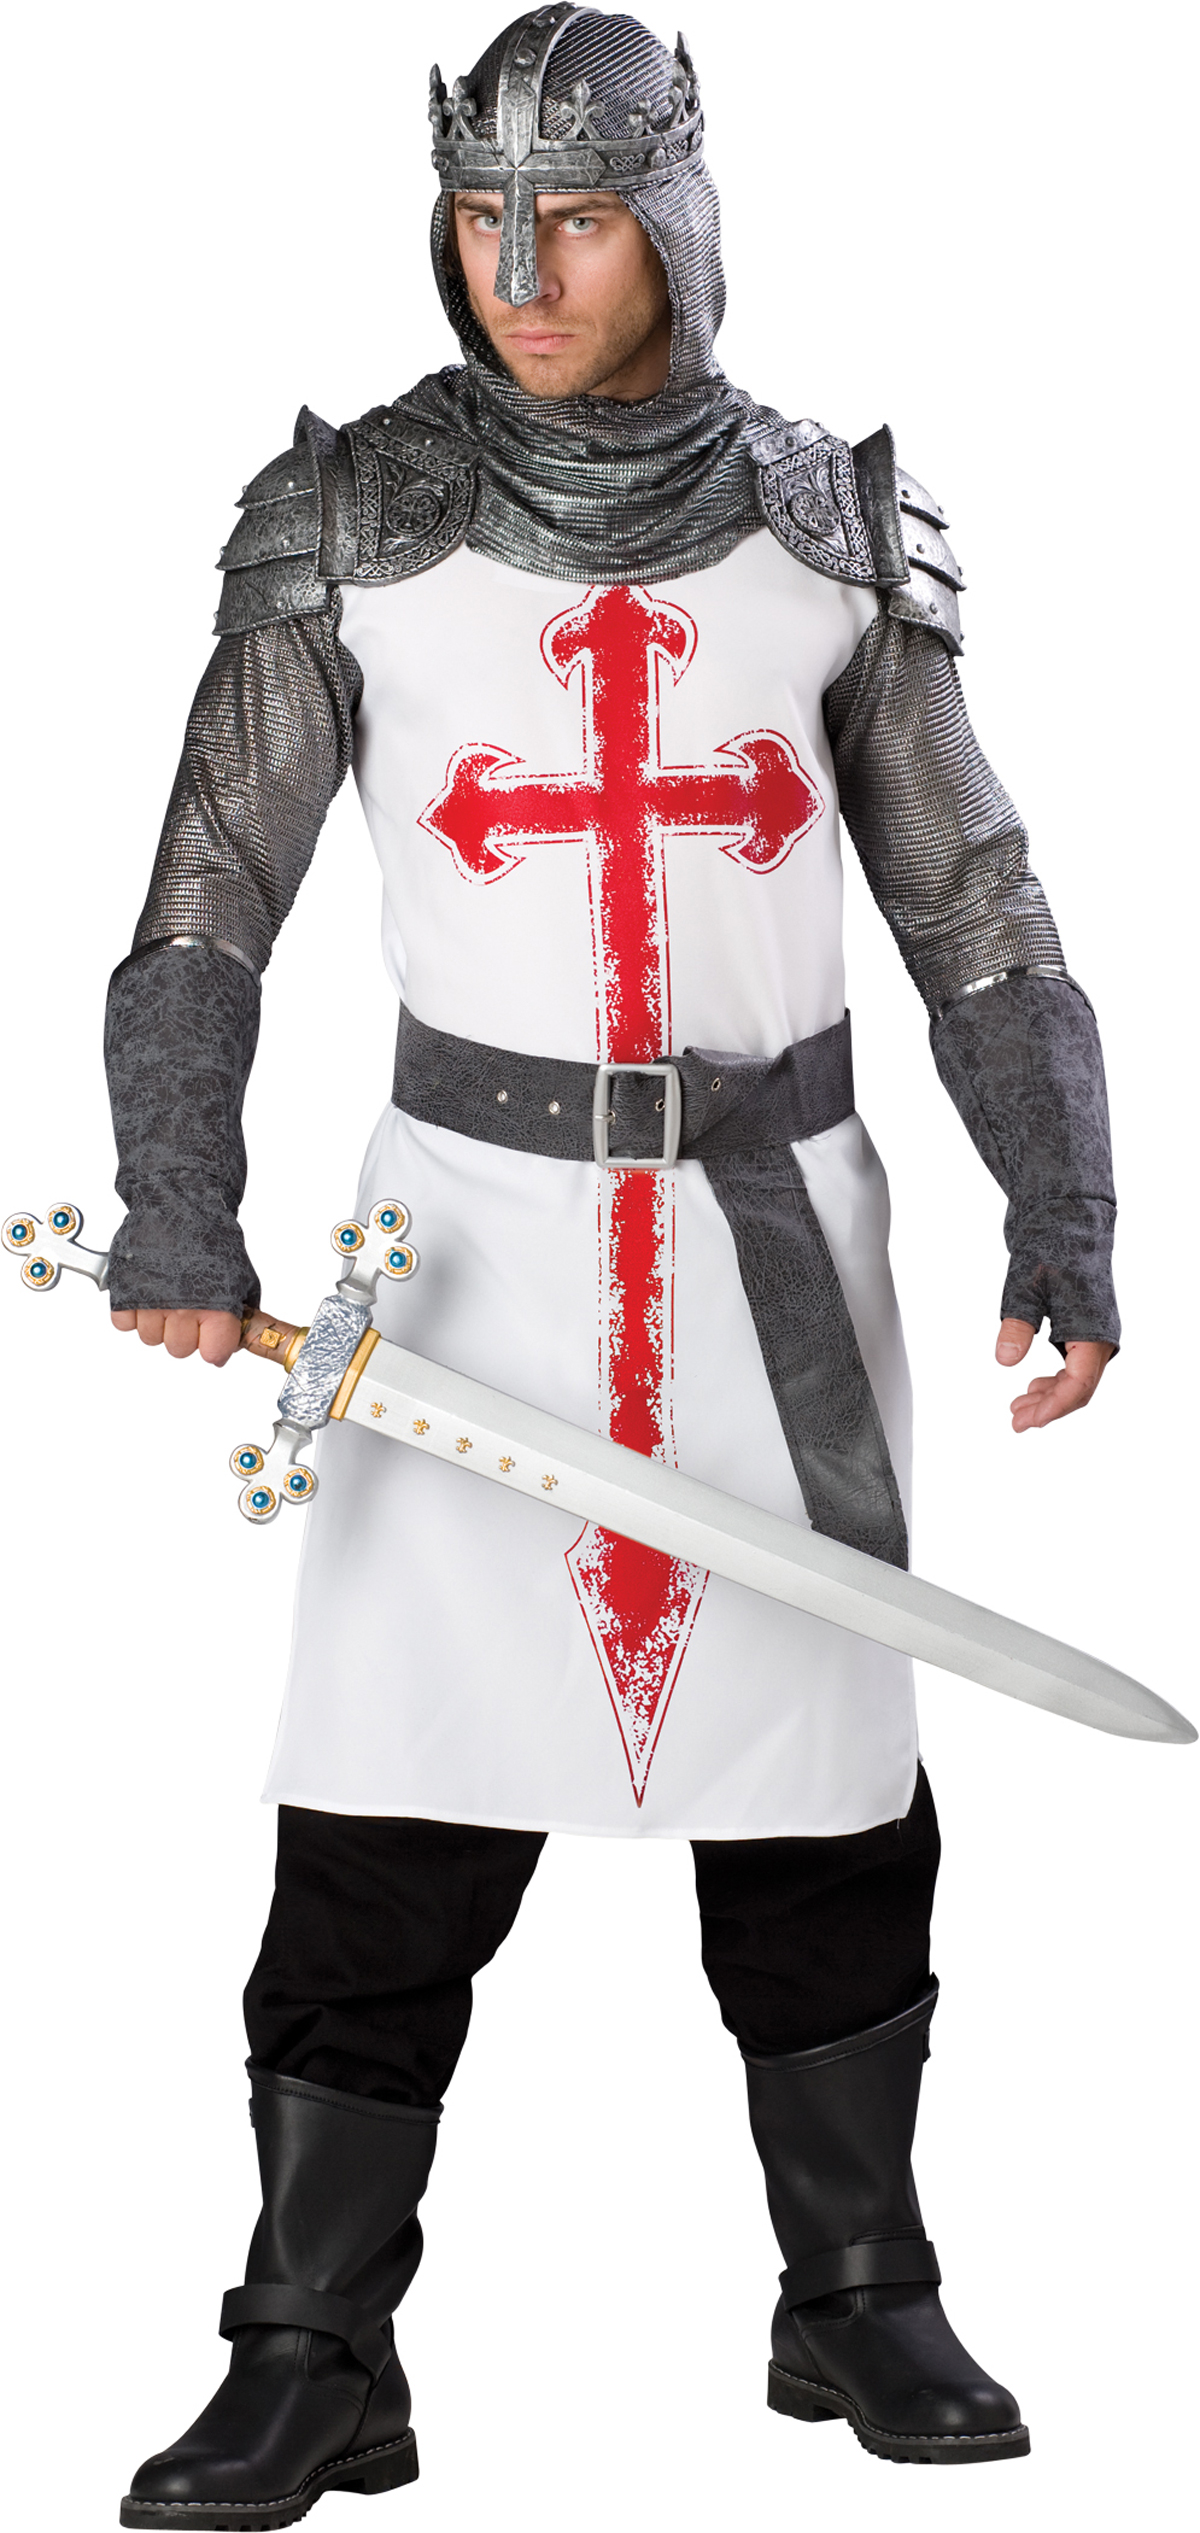 In Character Costumes Men's Crusader Premier Adult Costume - Brown - Medium